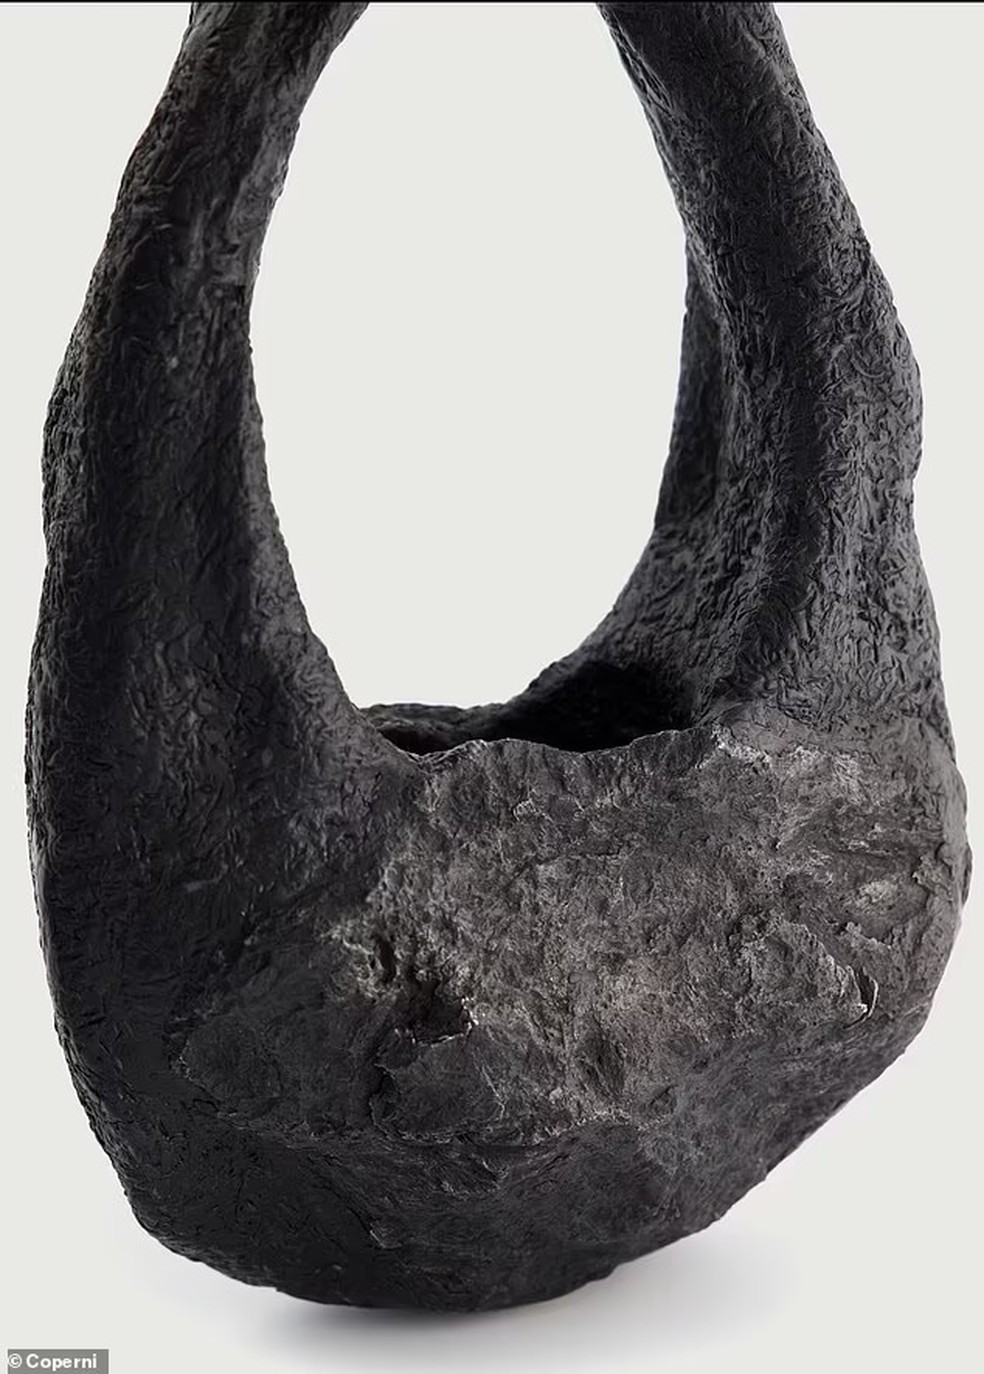 Bolsa foi confeccionada com rocha que caiu na Terra há 55 mil anos  — Foto: Coperni/Divulgação 